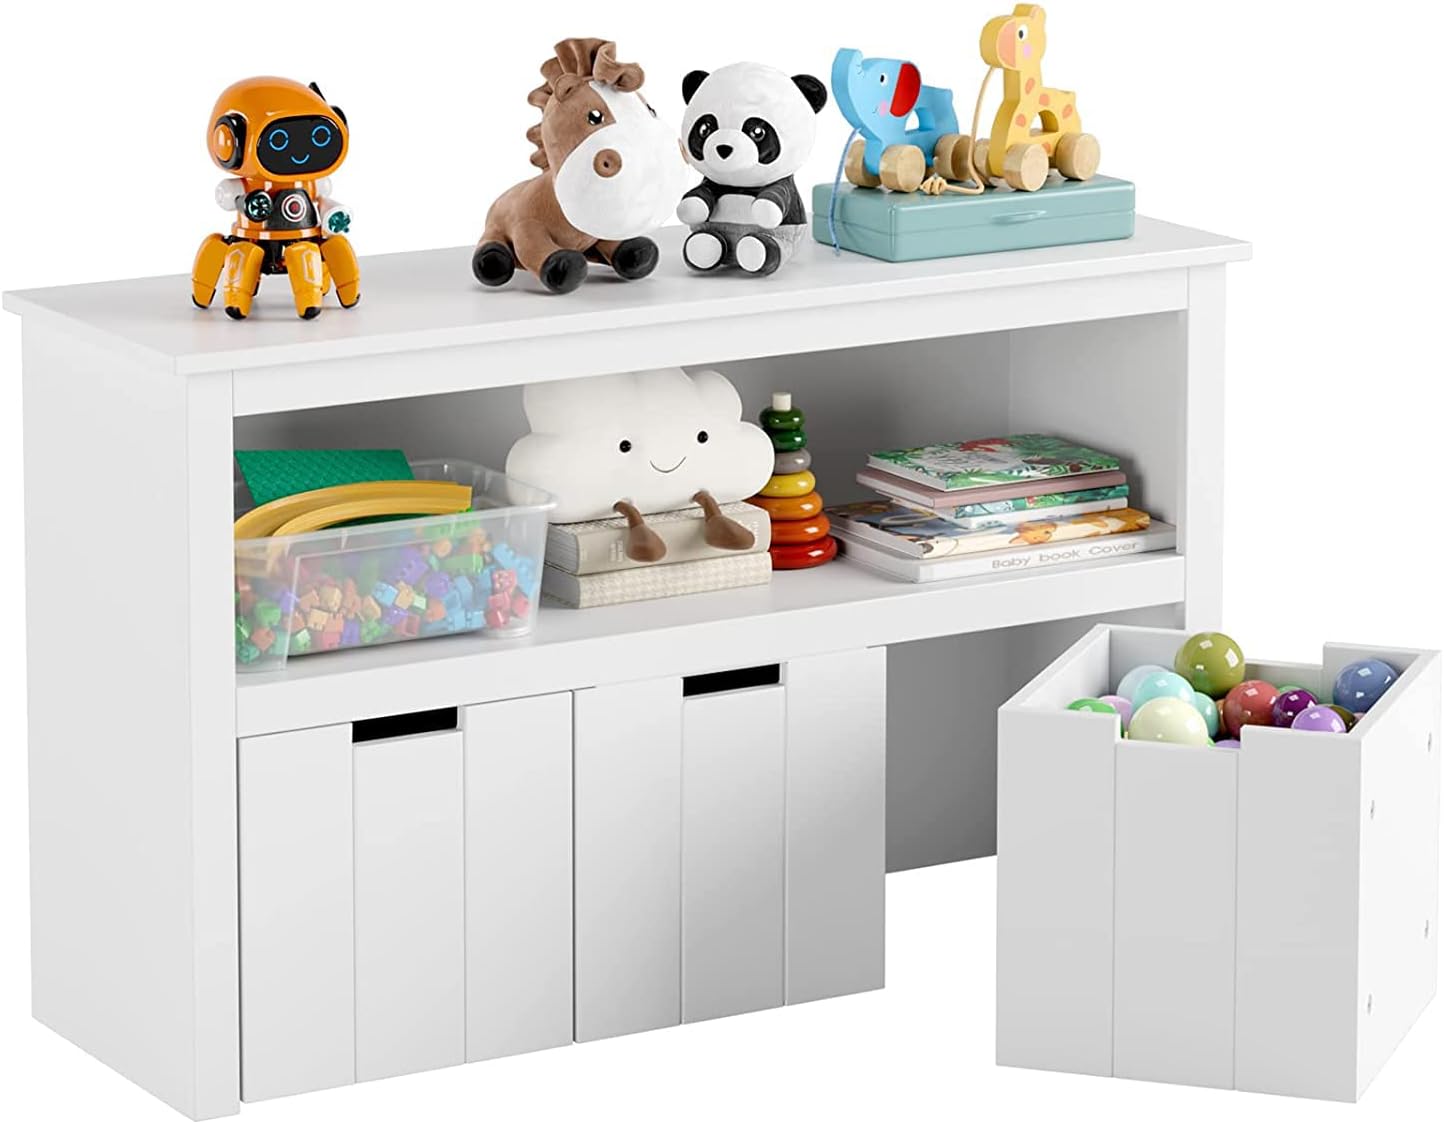 Organizador para almacenamiento de juguetes para niños - VIRTUAL MUEBLES